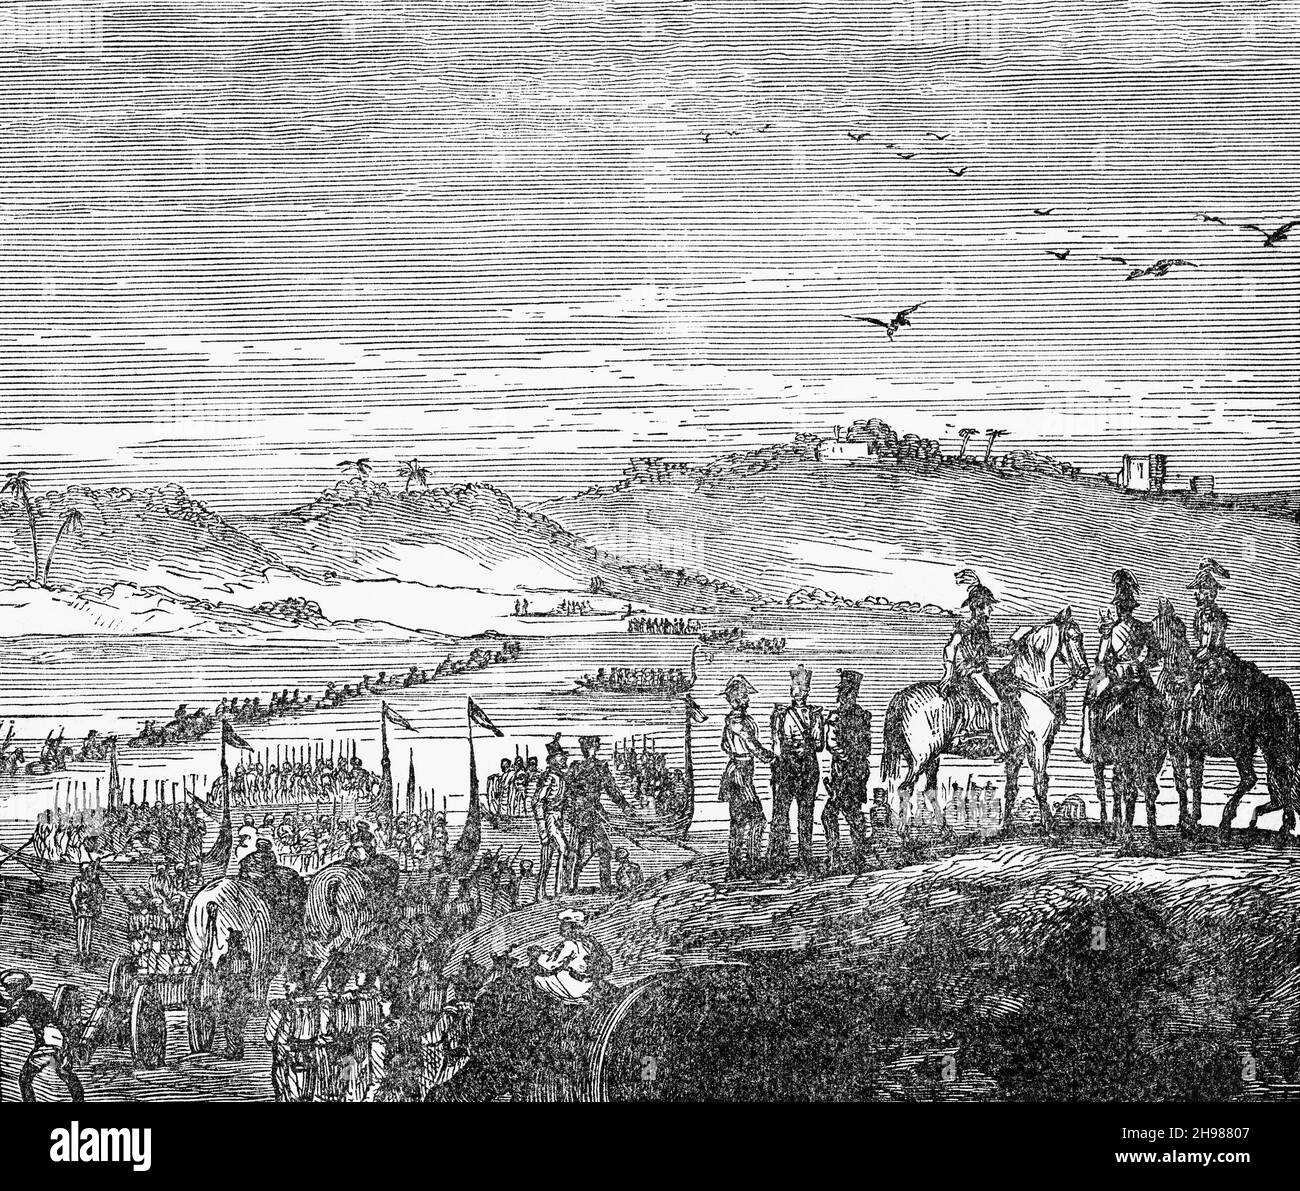 Eine Illustration der britischen Armee aus dem späten 19th. Jahrhundert, die den Sutlej- oder Satluj-Fluss überquert, den längsten der fünf Flüsse, die durch die historische Kreuzungsregion Punjab in Nordindien und Pakistan fließen. Stockfoto